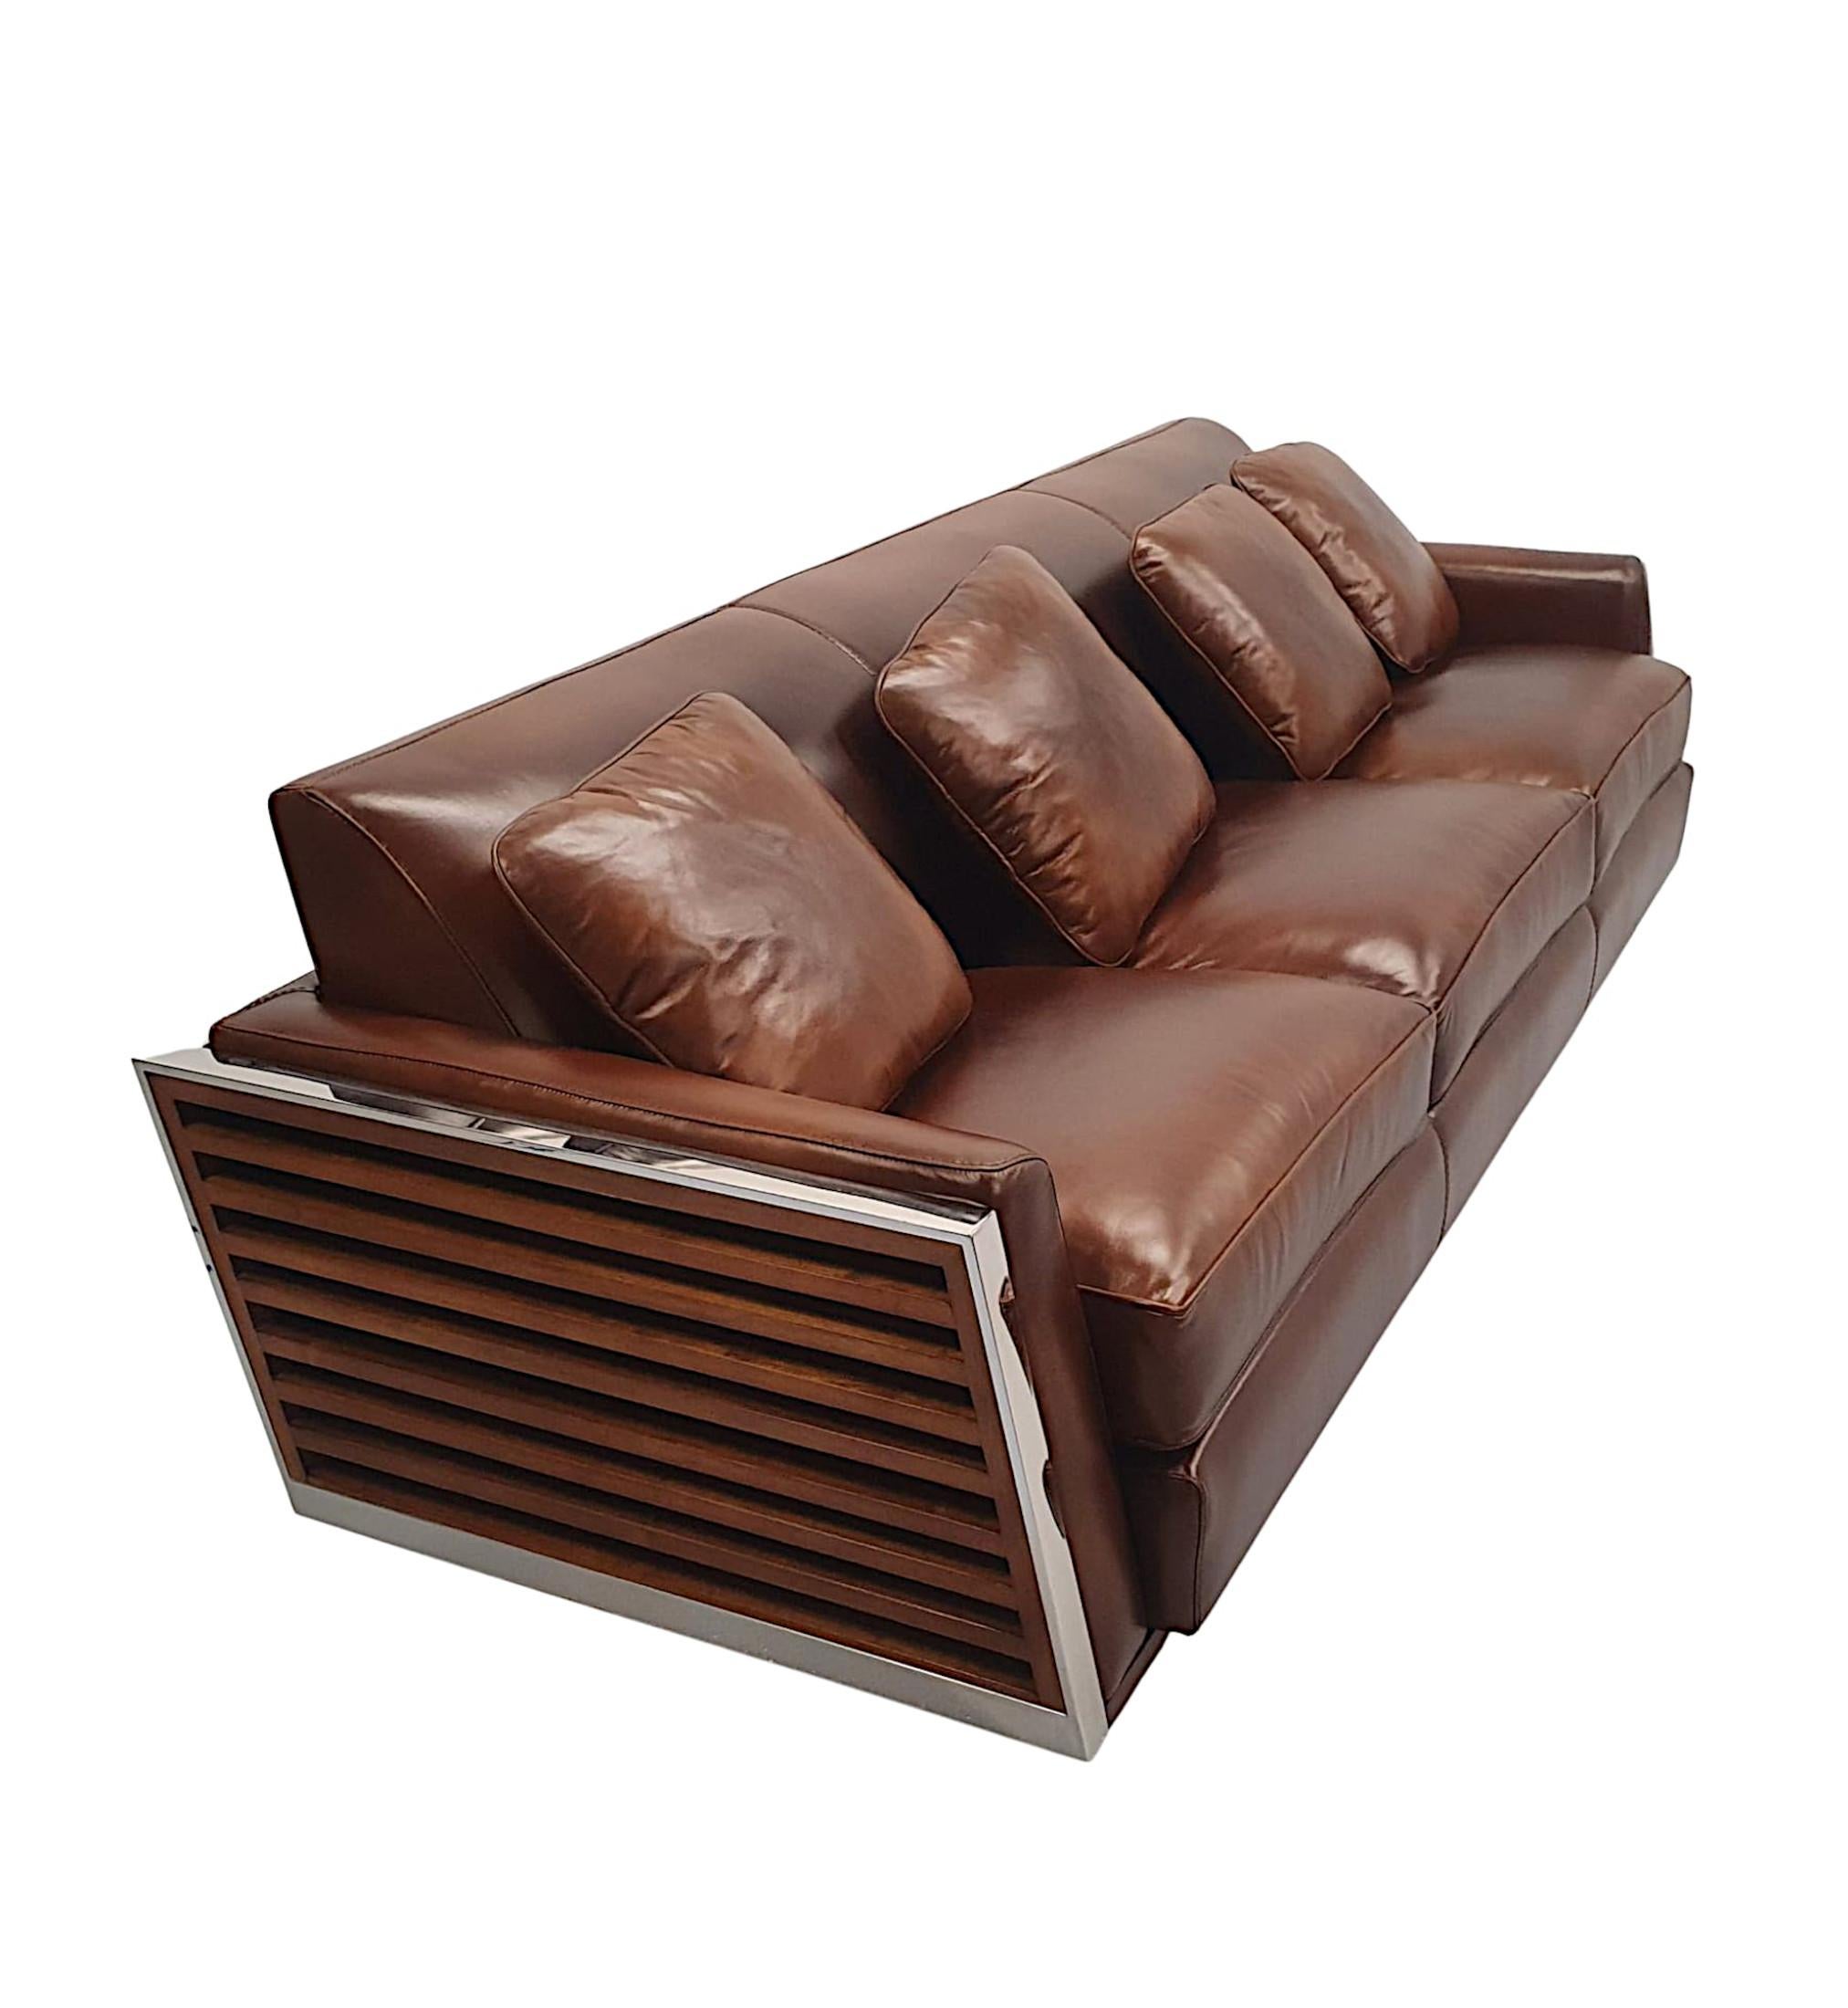 Ein fabelhaftes Dreisitzer-Sofa aus Leder und mit Chromrahmen im Art-Déco-Stil, von herrlicher Qualität und wunderschön ungepolstert in elegantem braunem Leder mit passenden Kissen, in einem atemberaubenden durchbrochenen Chromrahmen, der auf einer